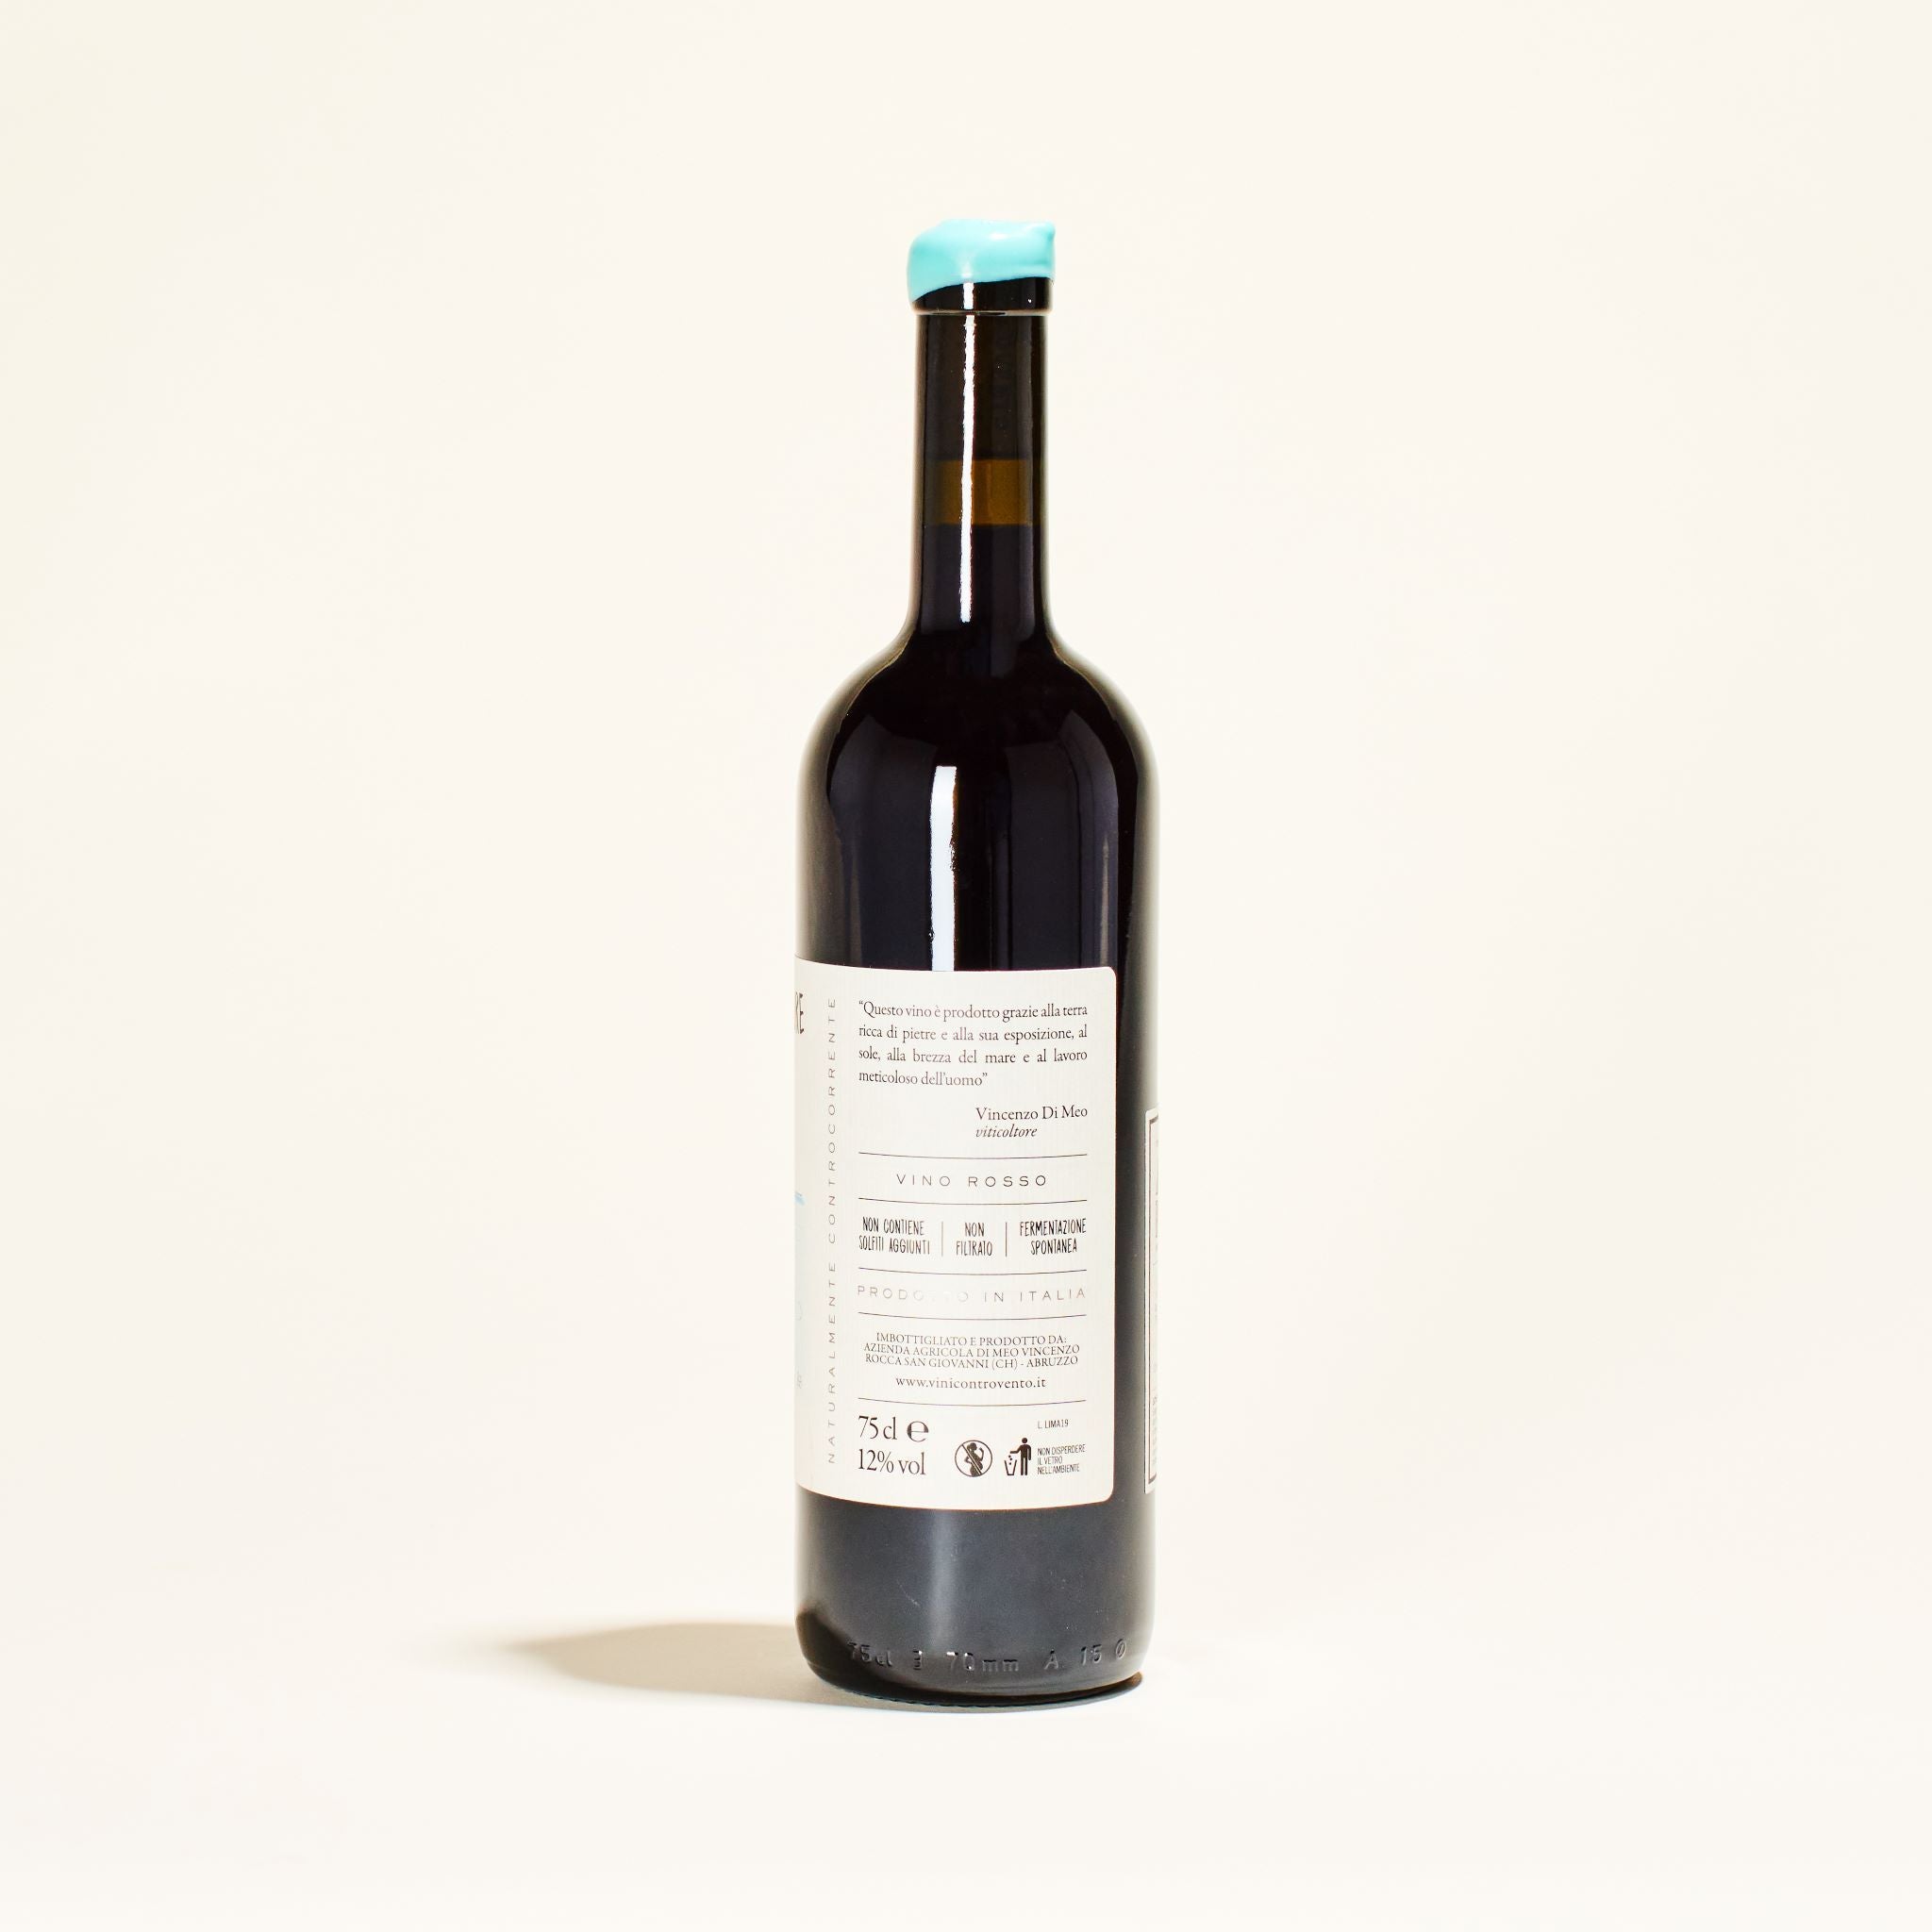 natural red wine limite acque sicure controvento abruzzo italy